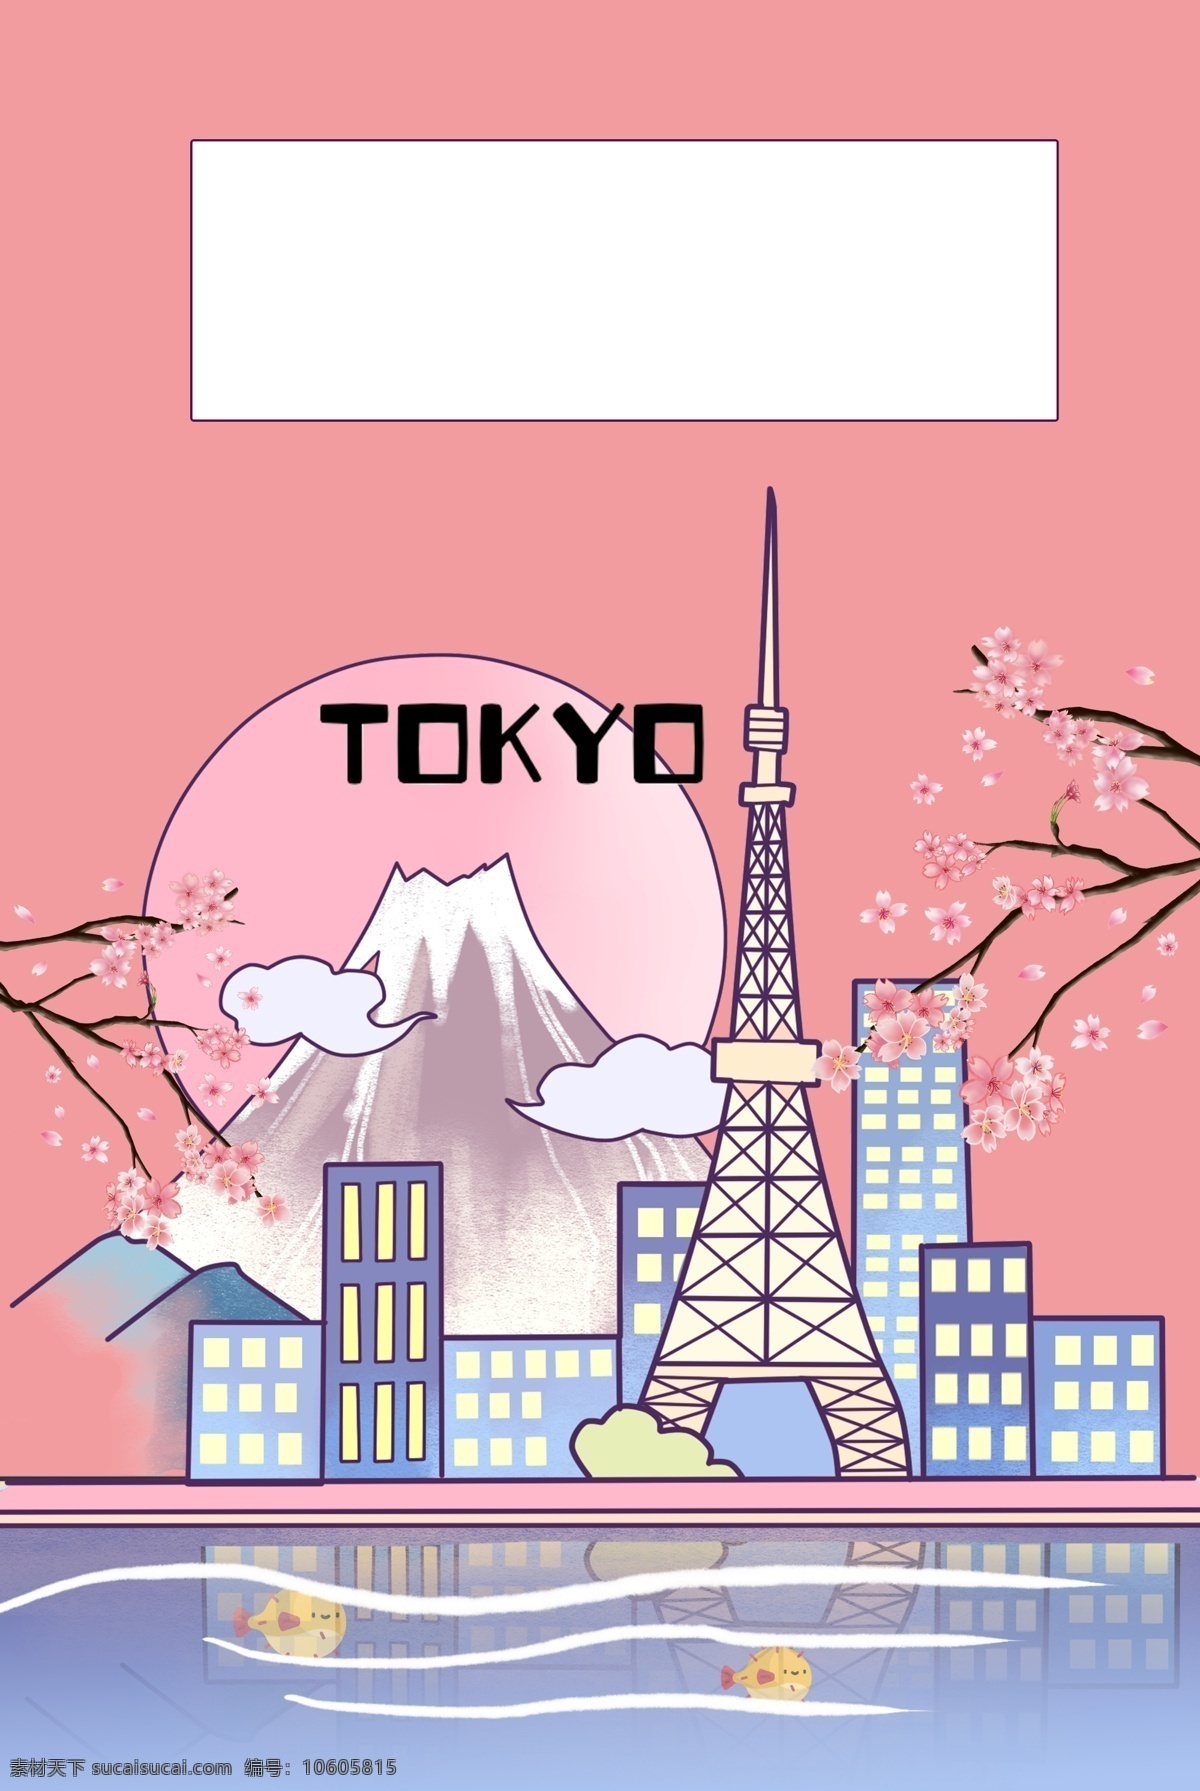 日本旅游 樱花 富士山 背景 海报 日本 旅游 东京塔 banner 轮播 海外